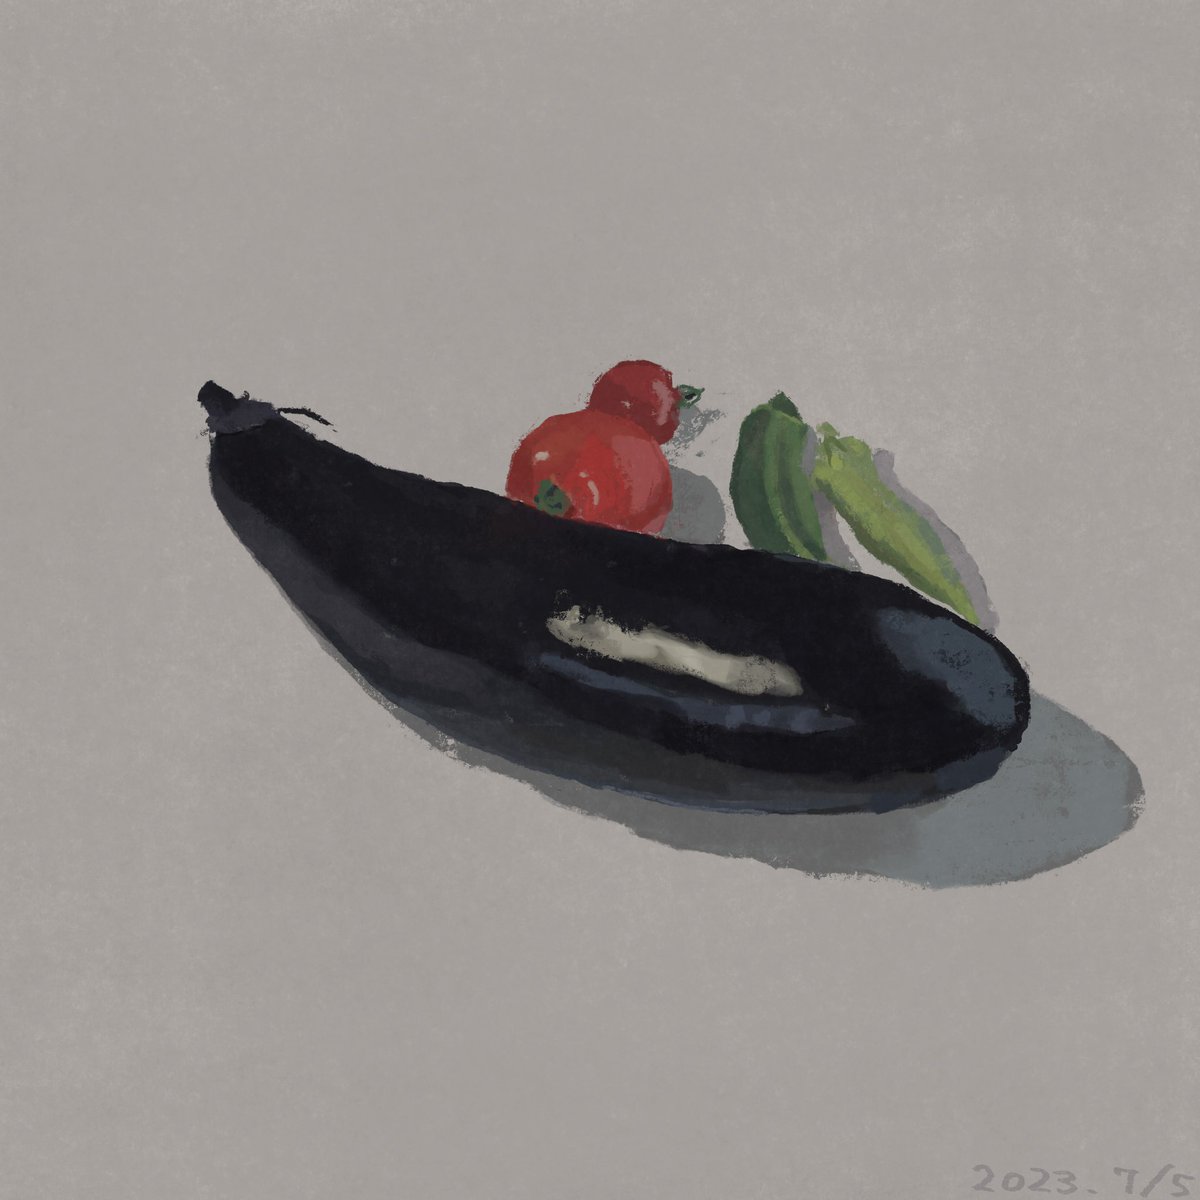 「野菜となぜか財布。 」|タカヒロのイラスト